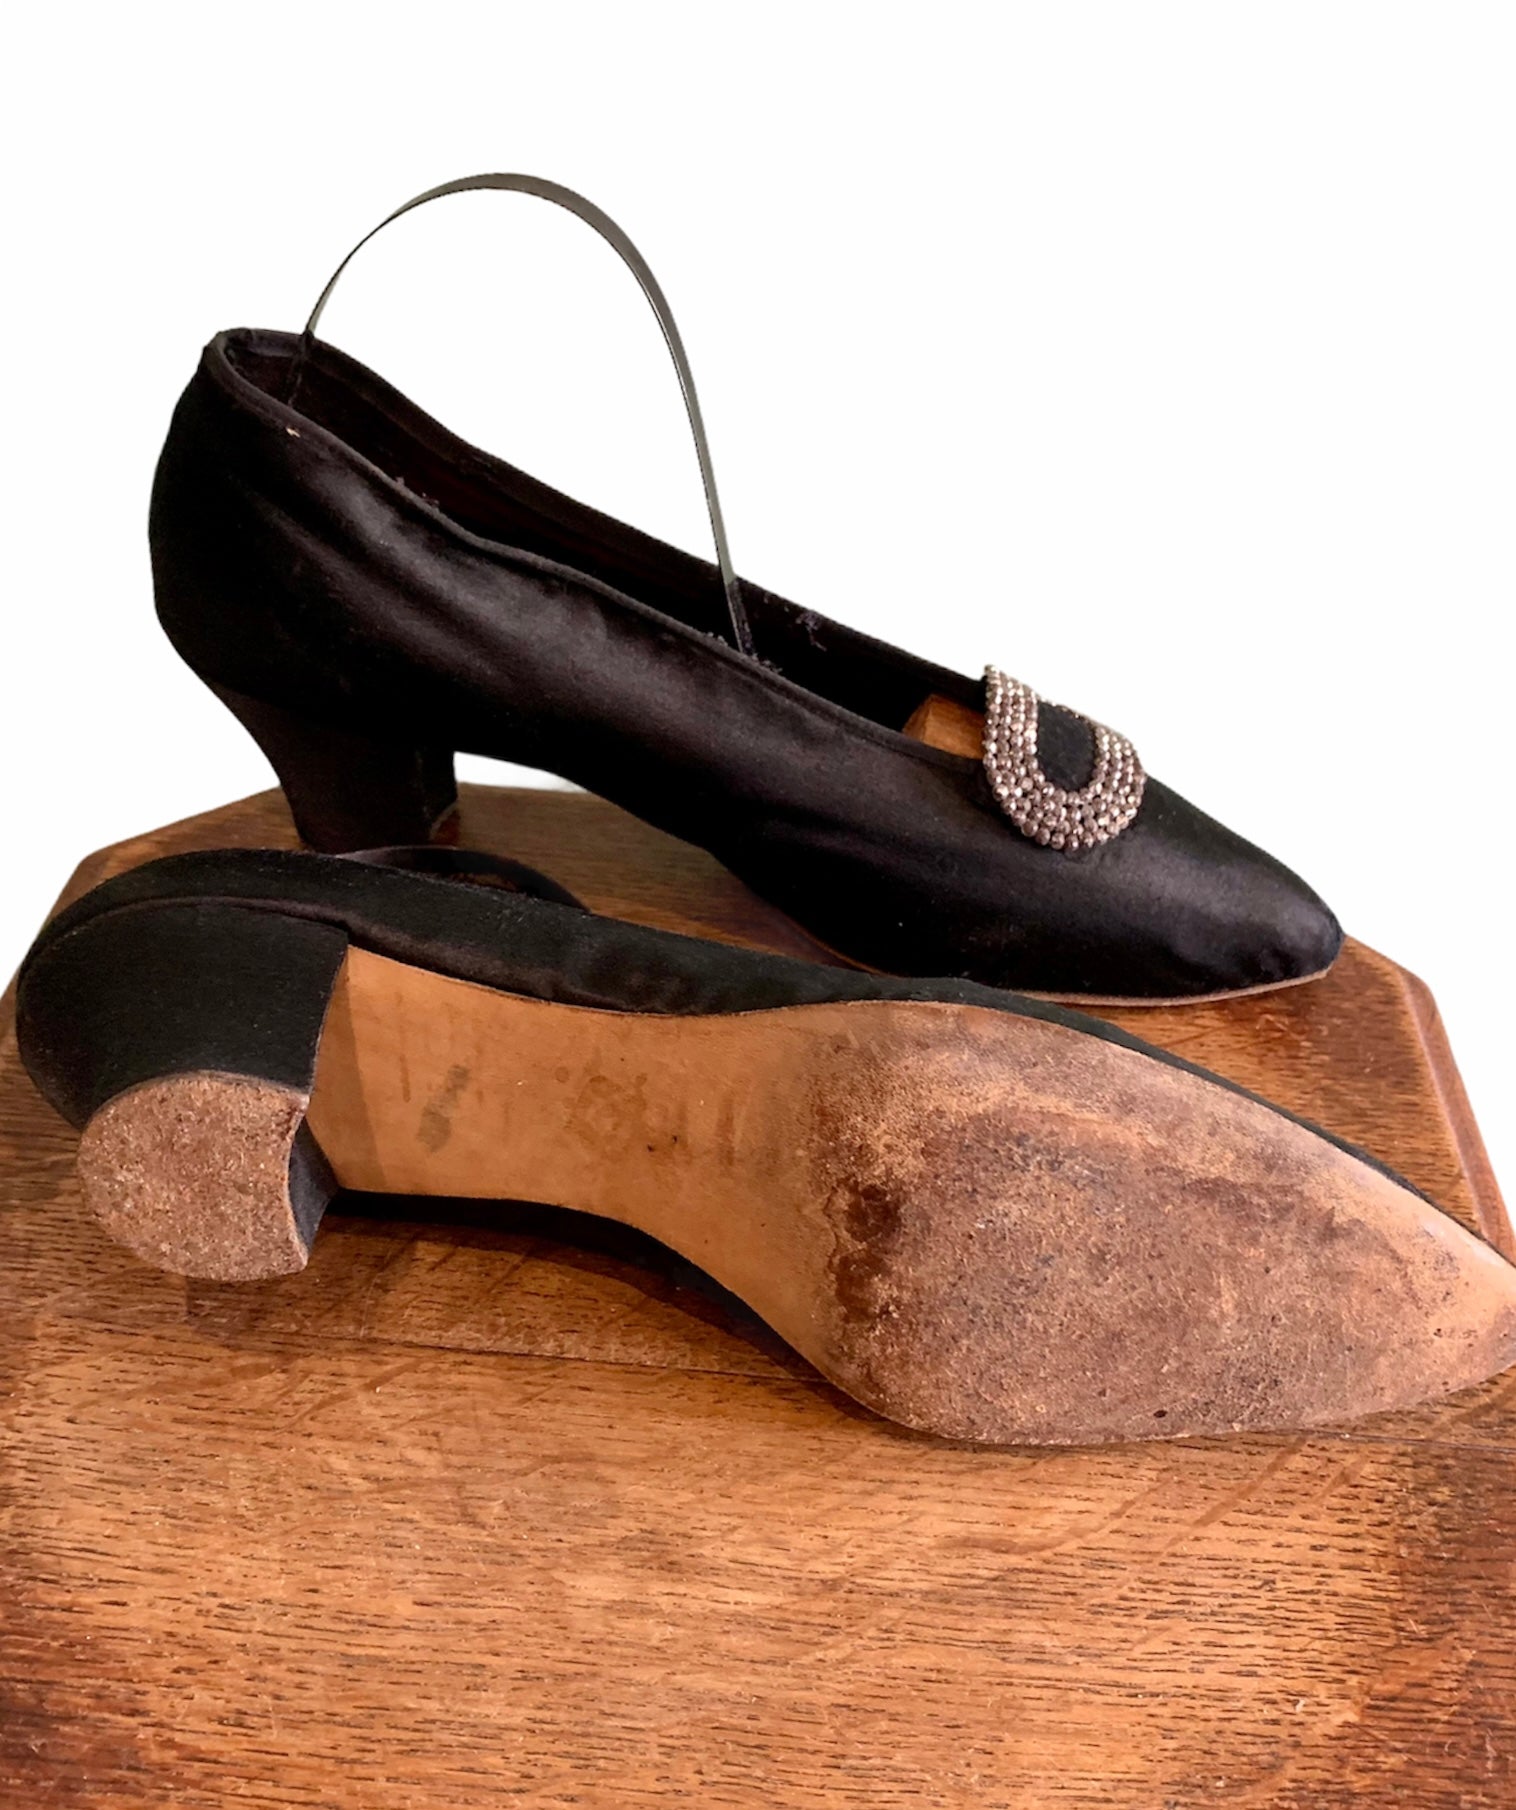 Chaussures années 20 - Mode Années 20